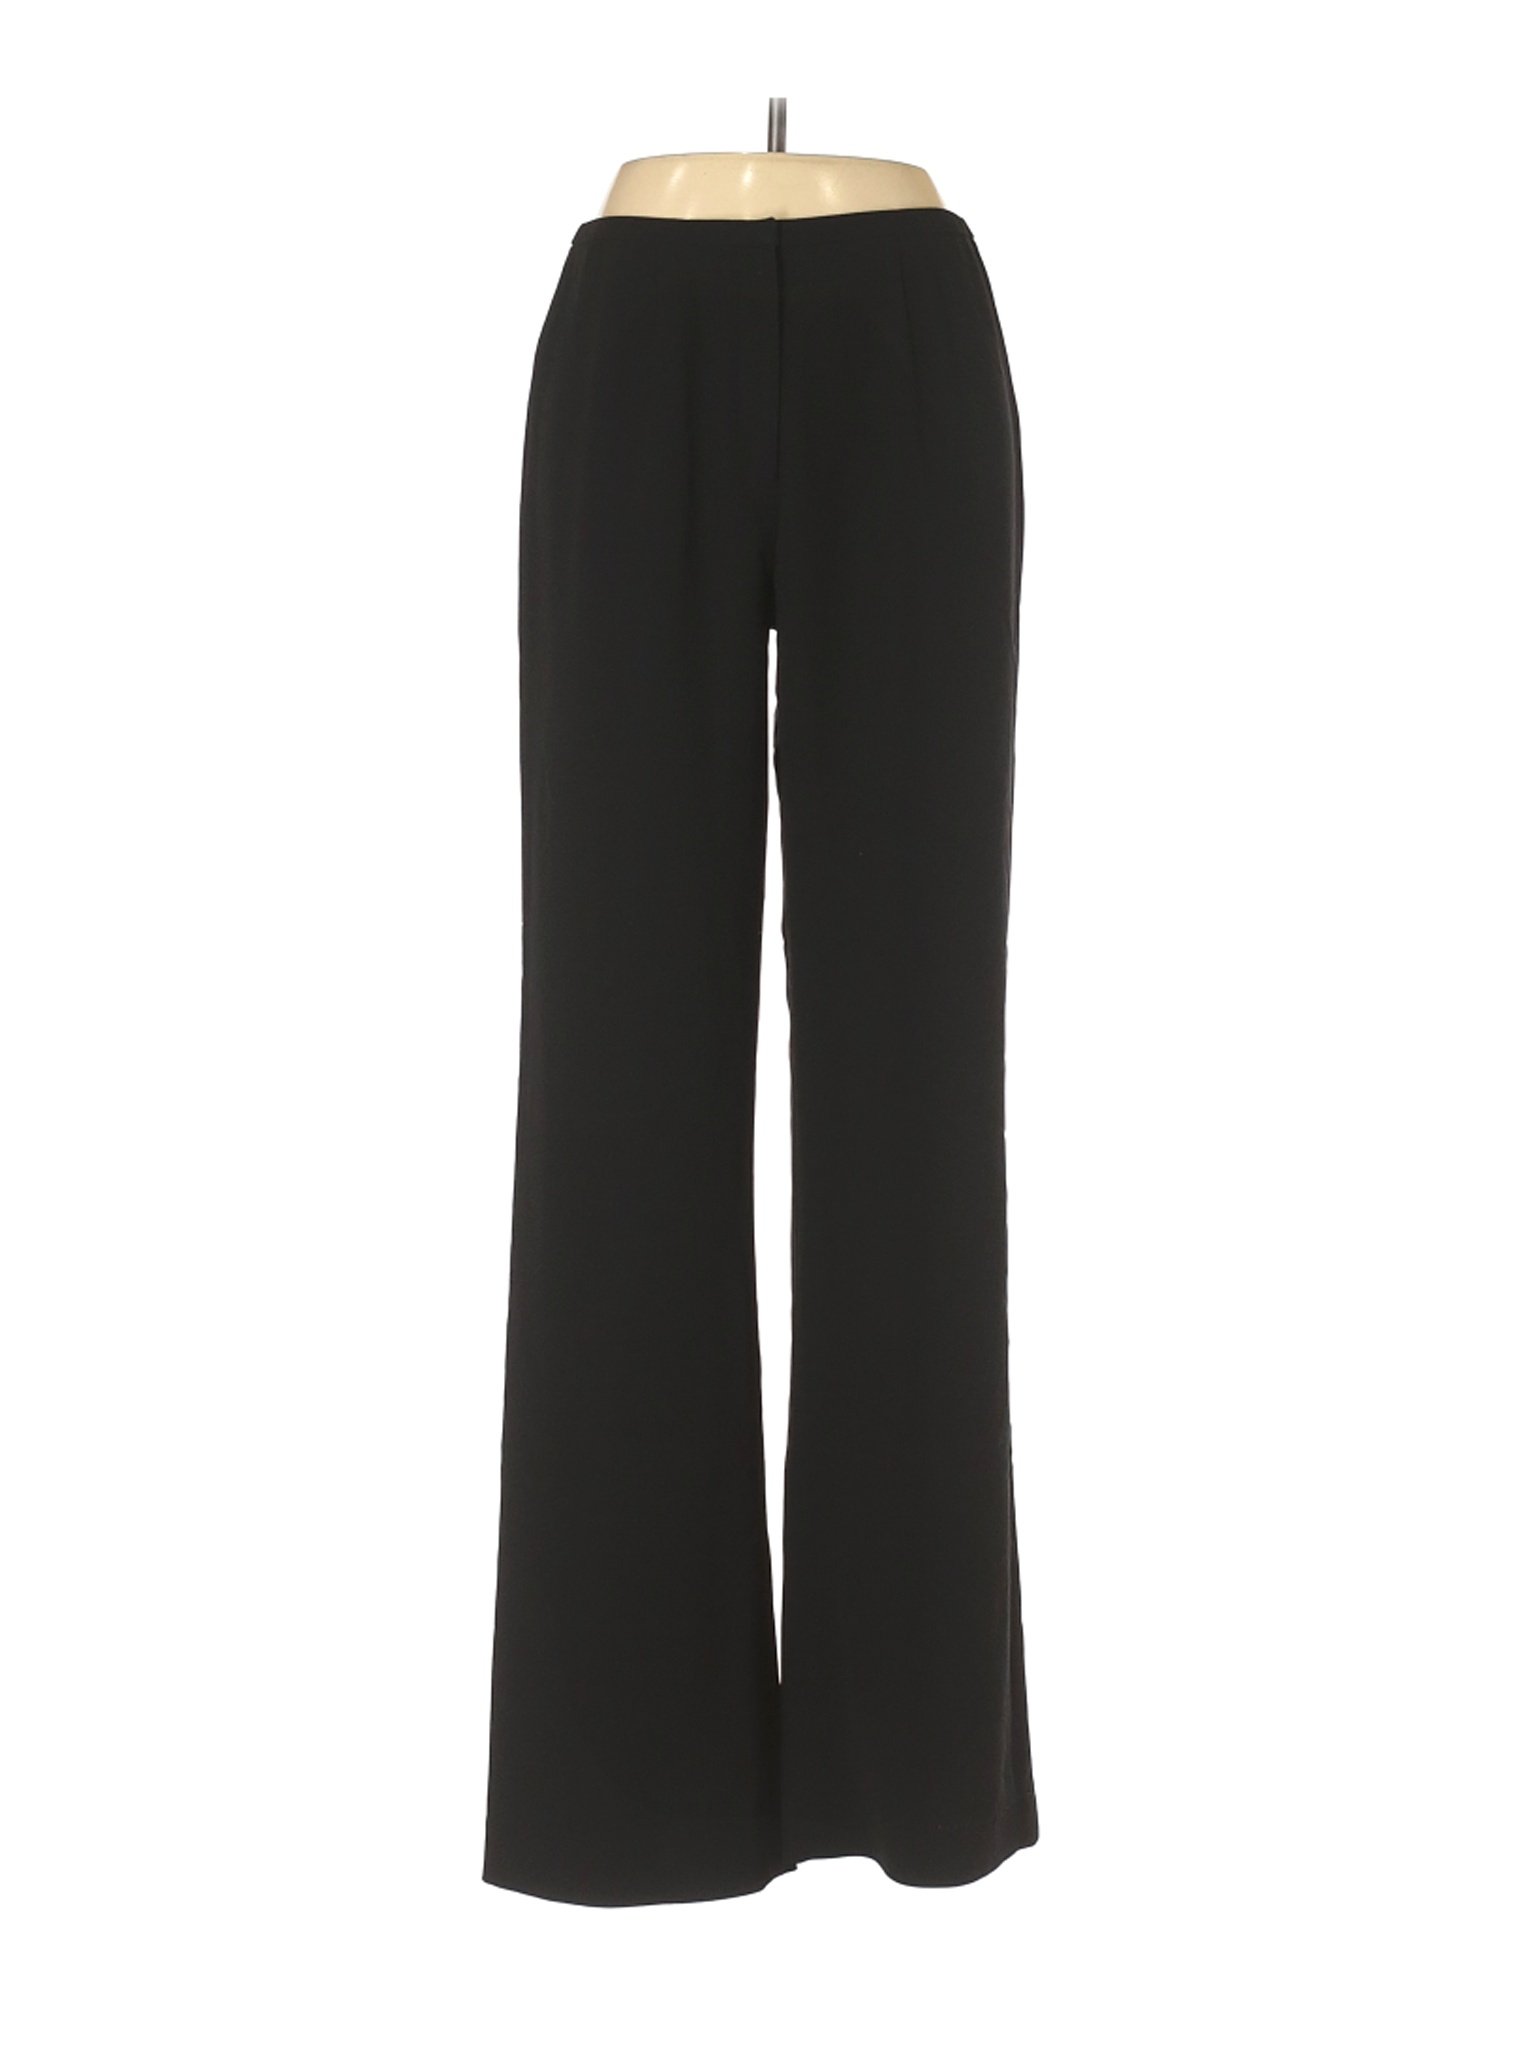 Calvin Klein Women Black Dress Pants 6 | eBay